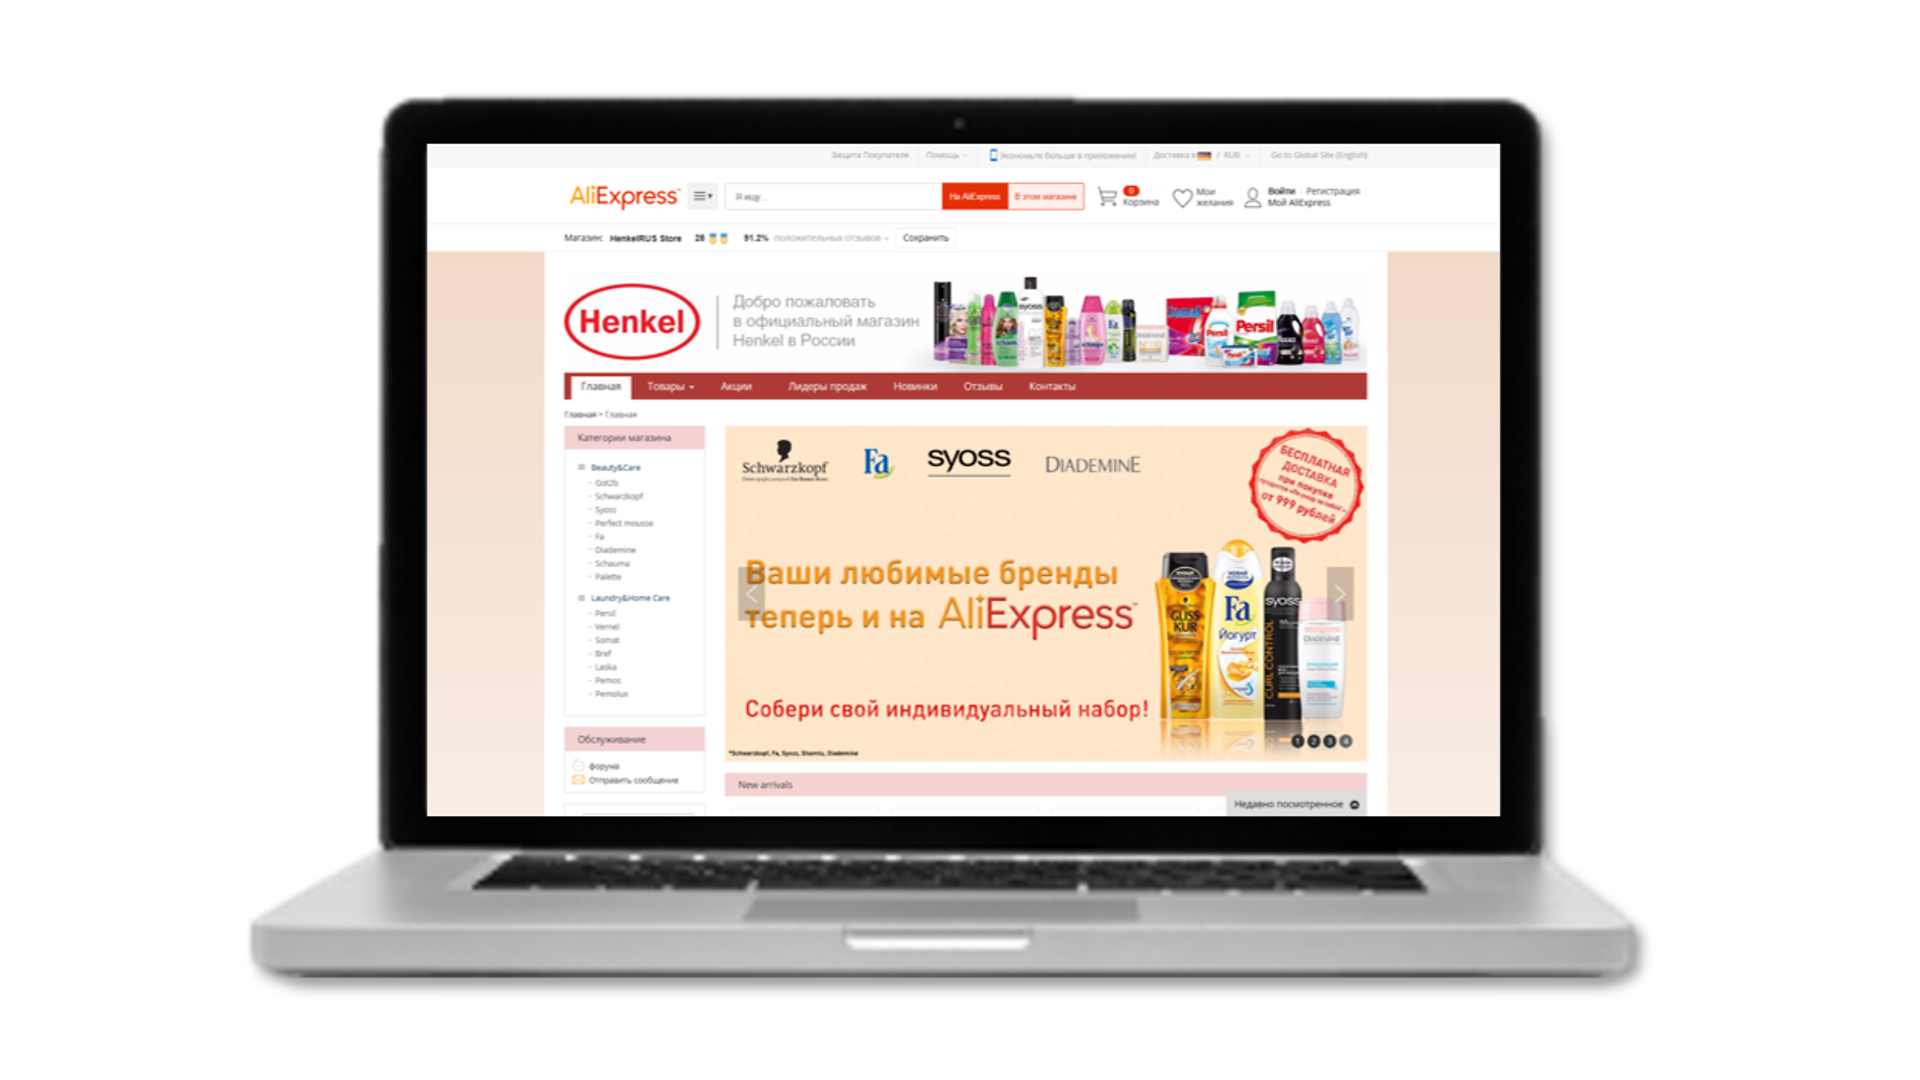 Henkel’s online store on AliExpress MALL,